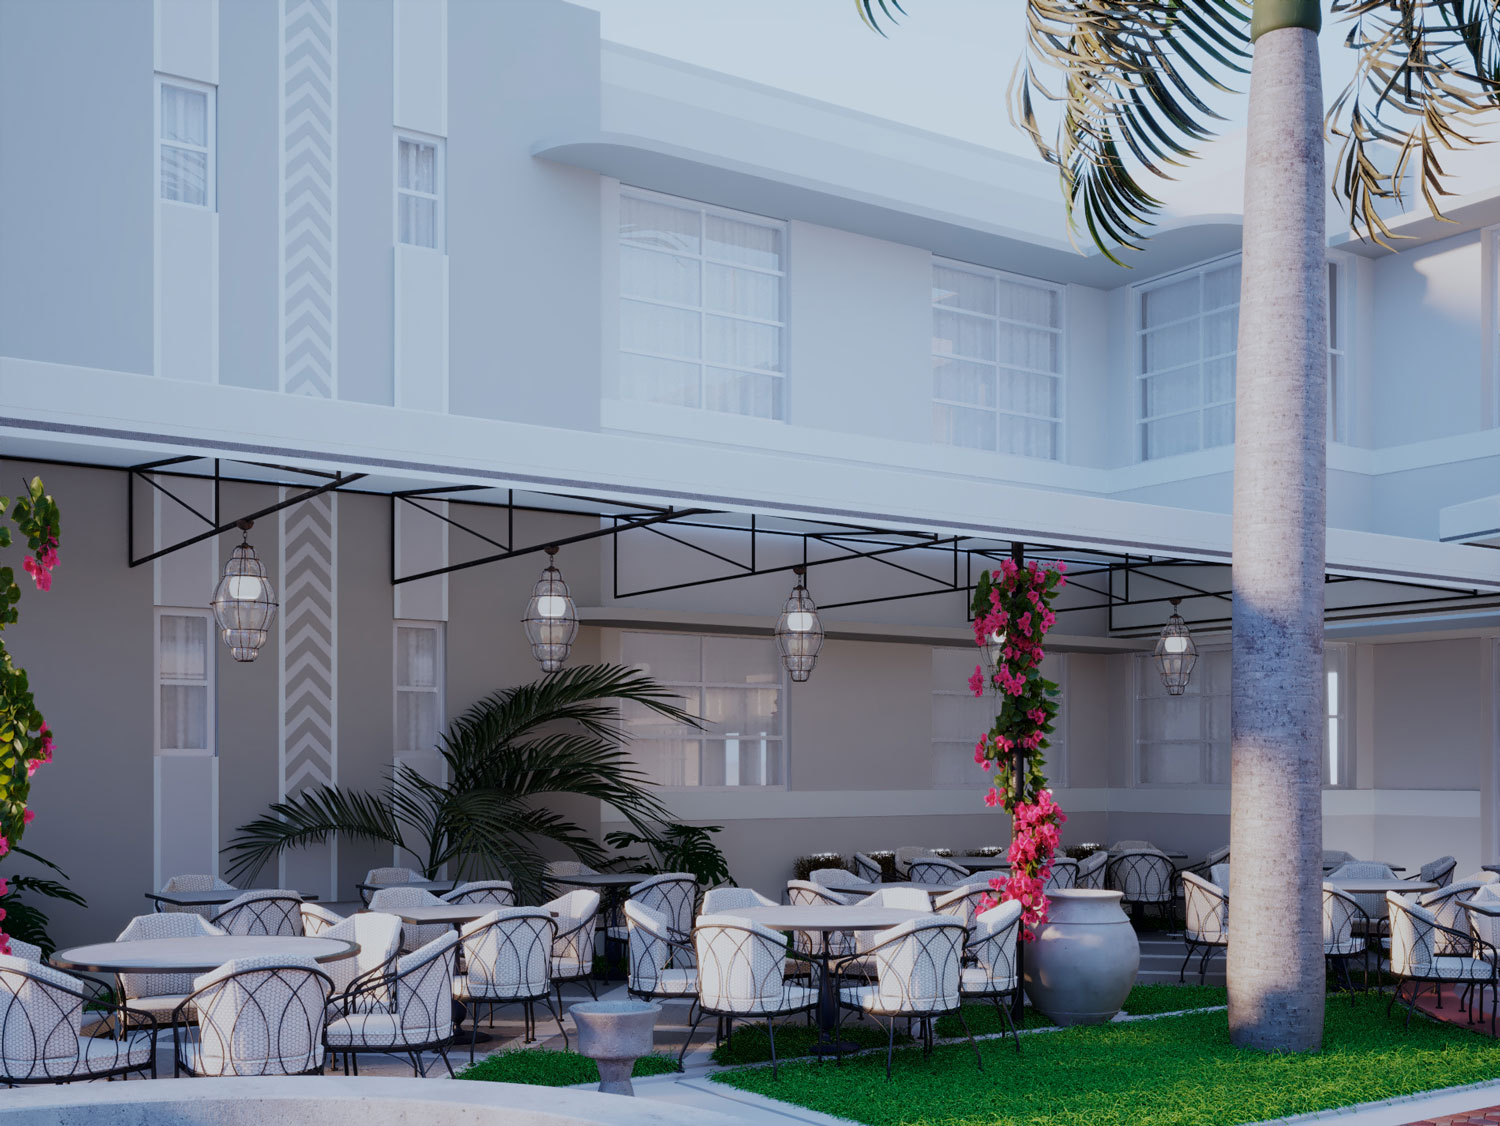 South Beach Hotel Casa Farina Restaurant, South Beach, FL, Veronica Mishaan